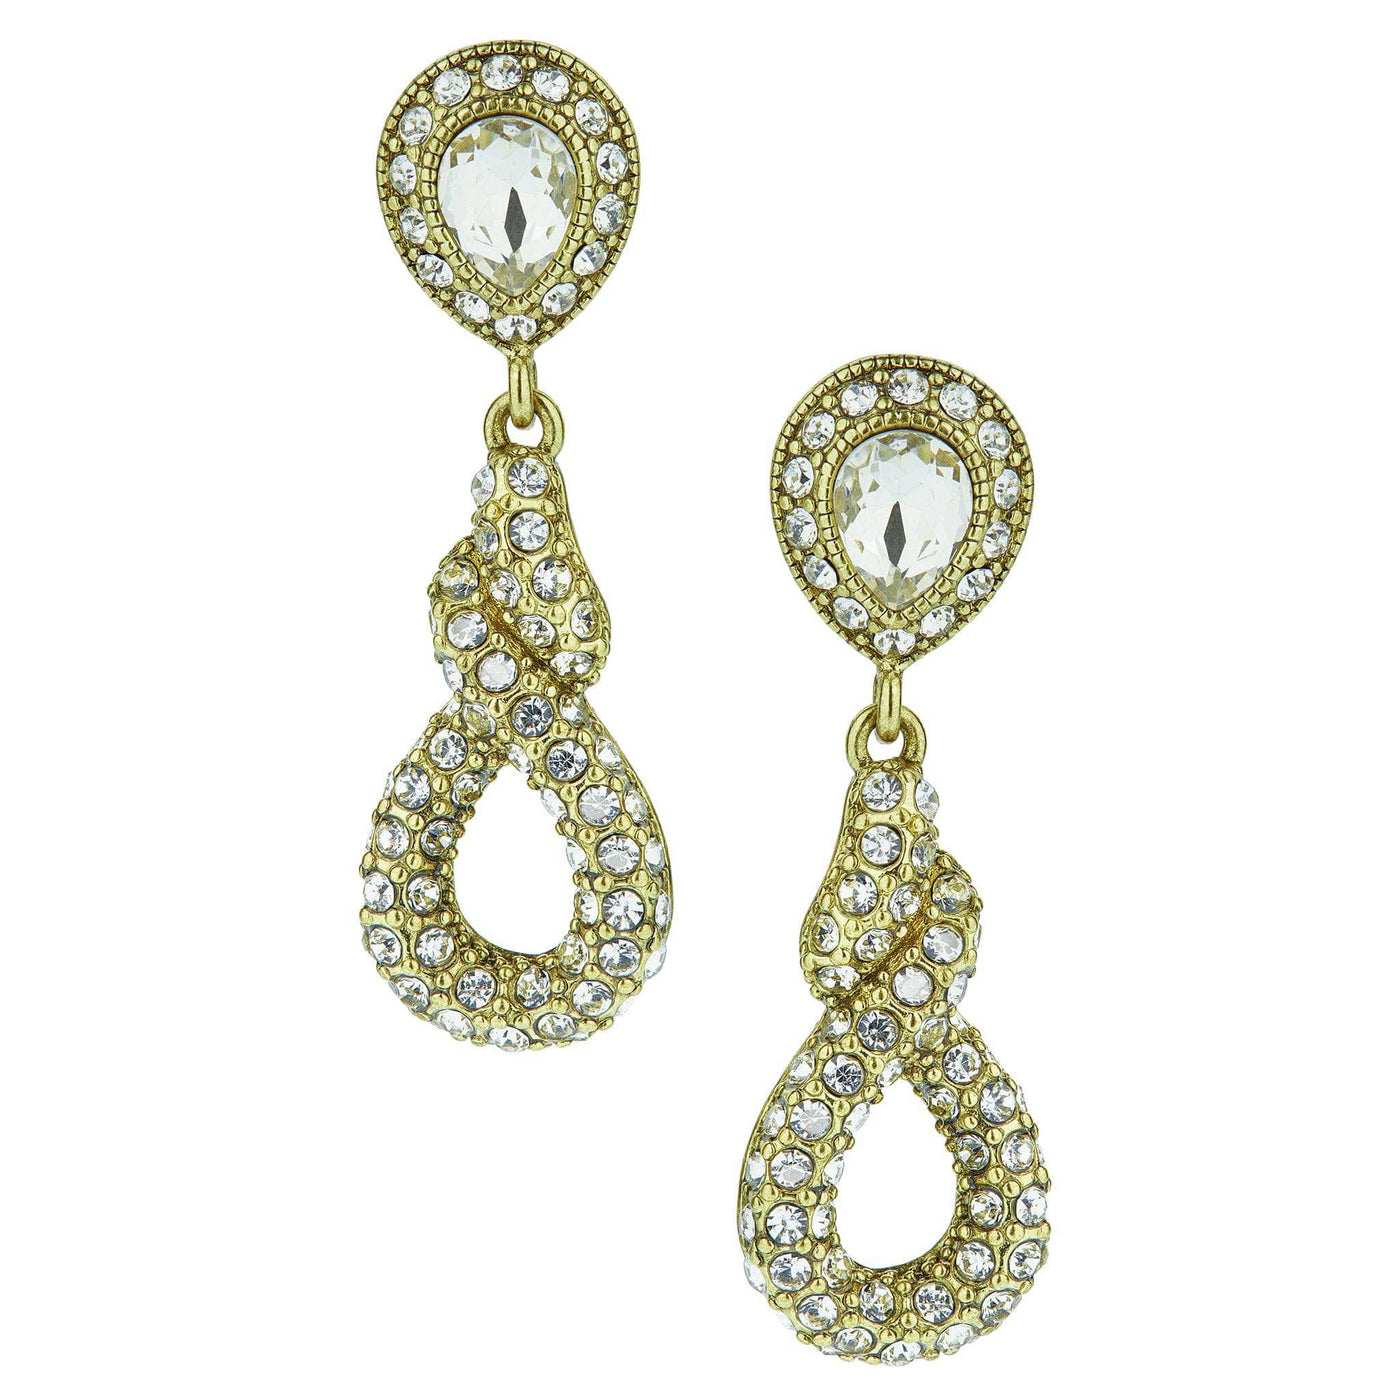 Heidi Daus®"Sleek and Sophisticated" Crystal Earrings